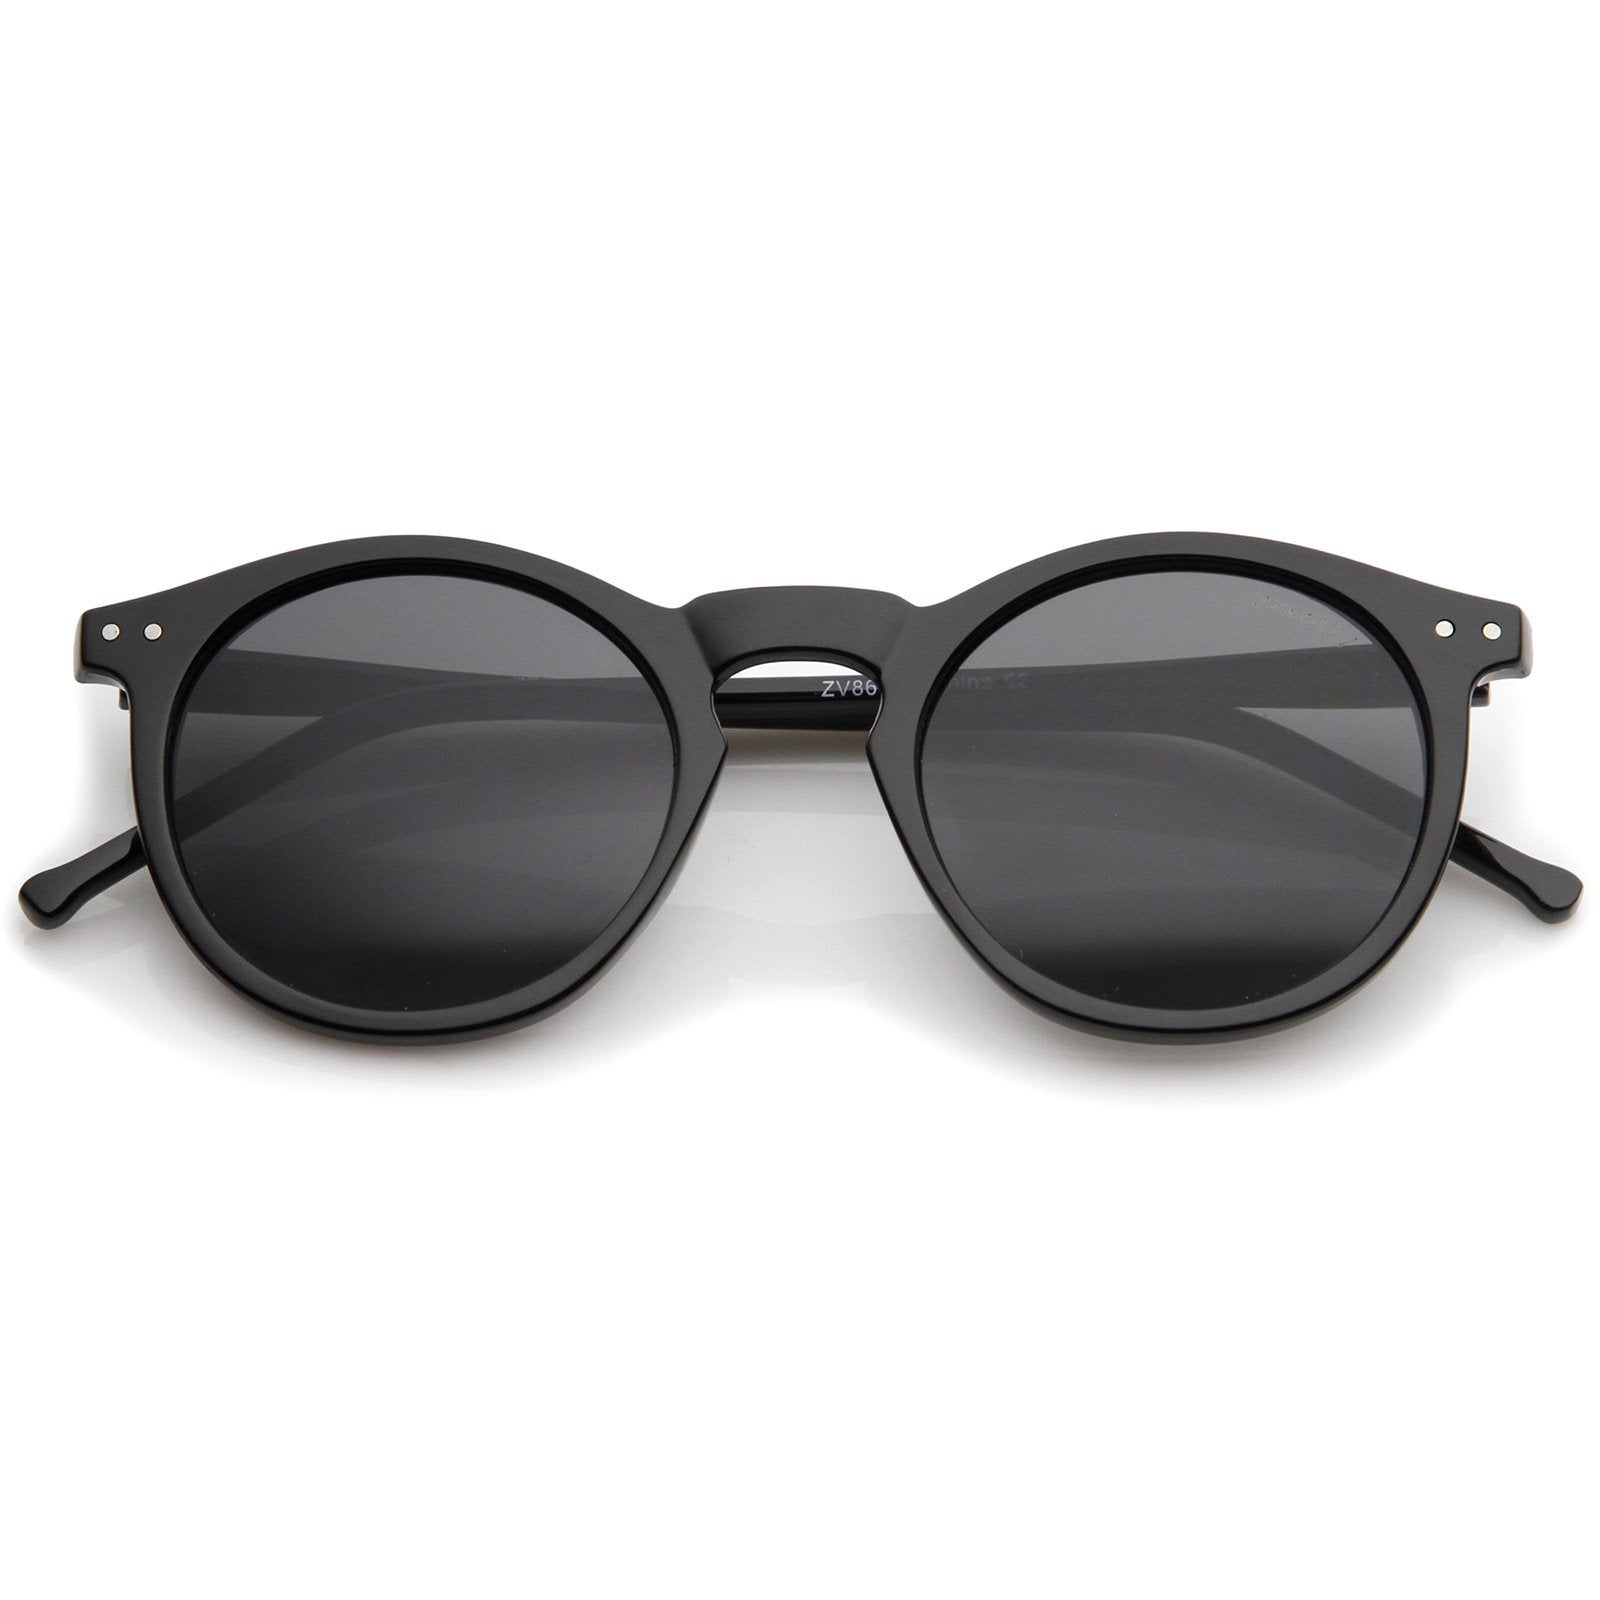 Hipster Glasses | Trending Eyeglasses for Men & Women | Framesbuy